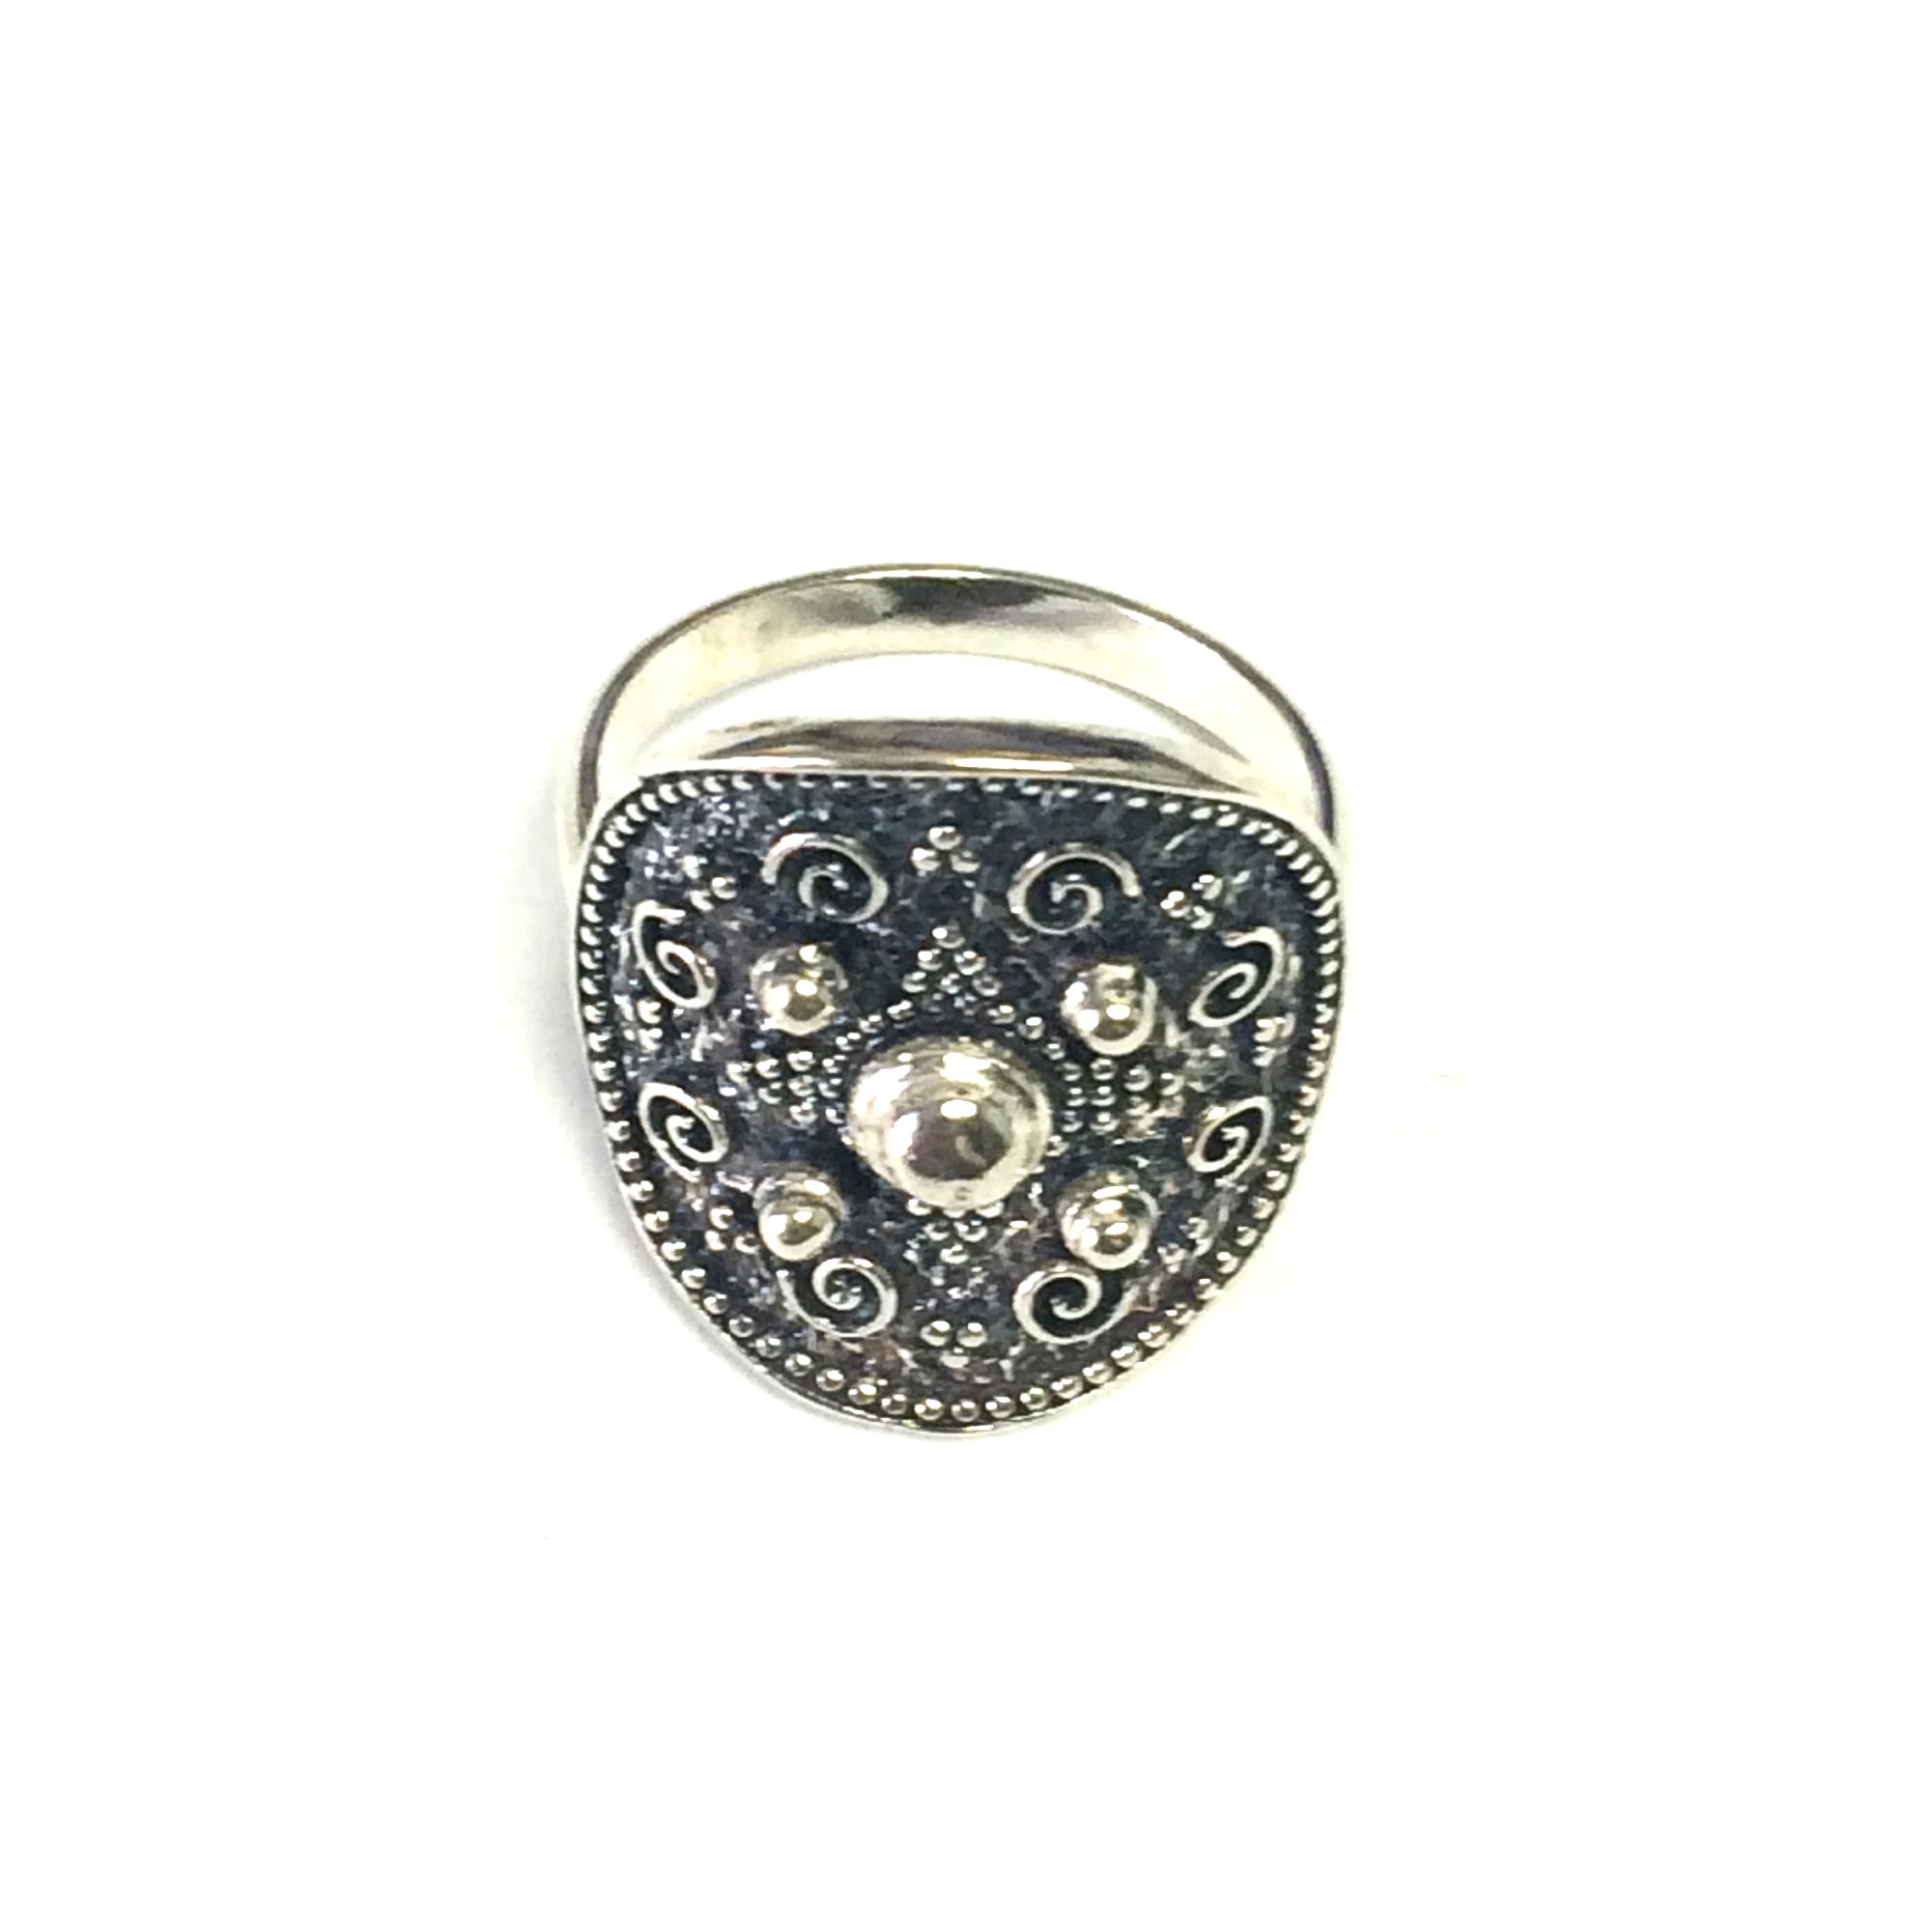 Runder Ring aus Sterlingsilber im byzantinischen Stil, feiner Designerschmuck für Männer und Frauen